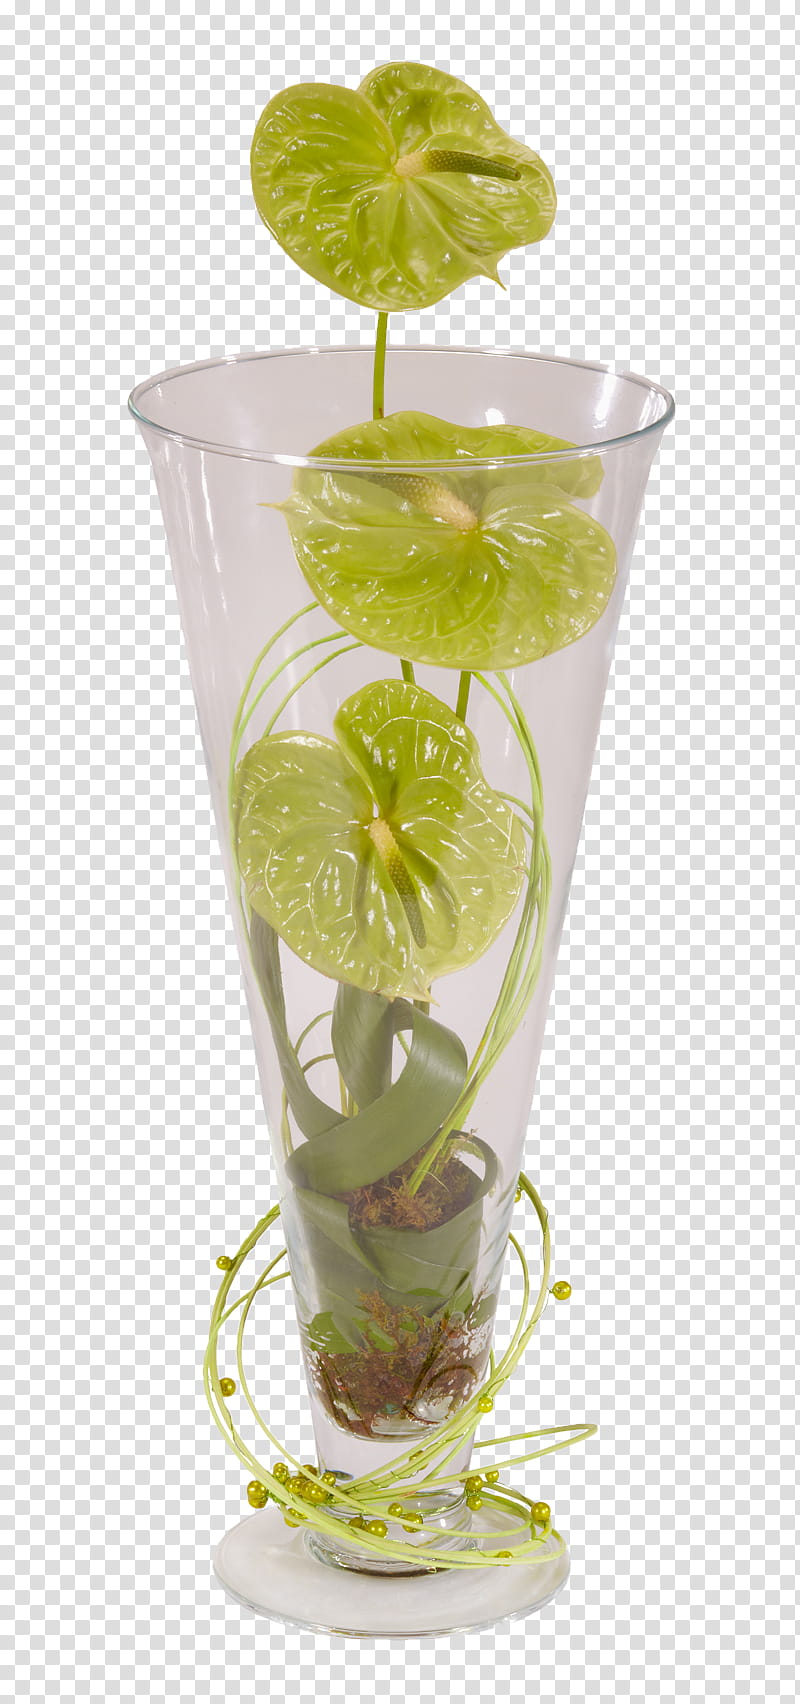 Floral Flower, Floristry, Floral Design, Flower Bouquet, Vase, Green, Rose, Ikebana transparent background PNG clipart